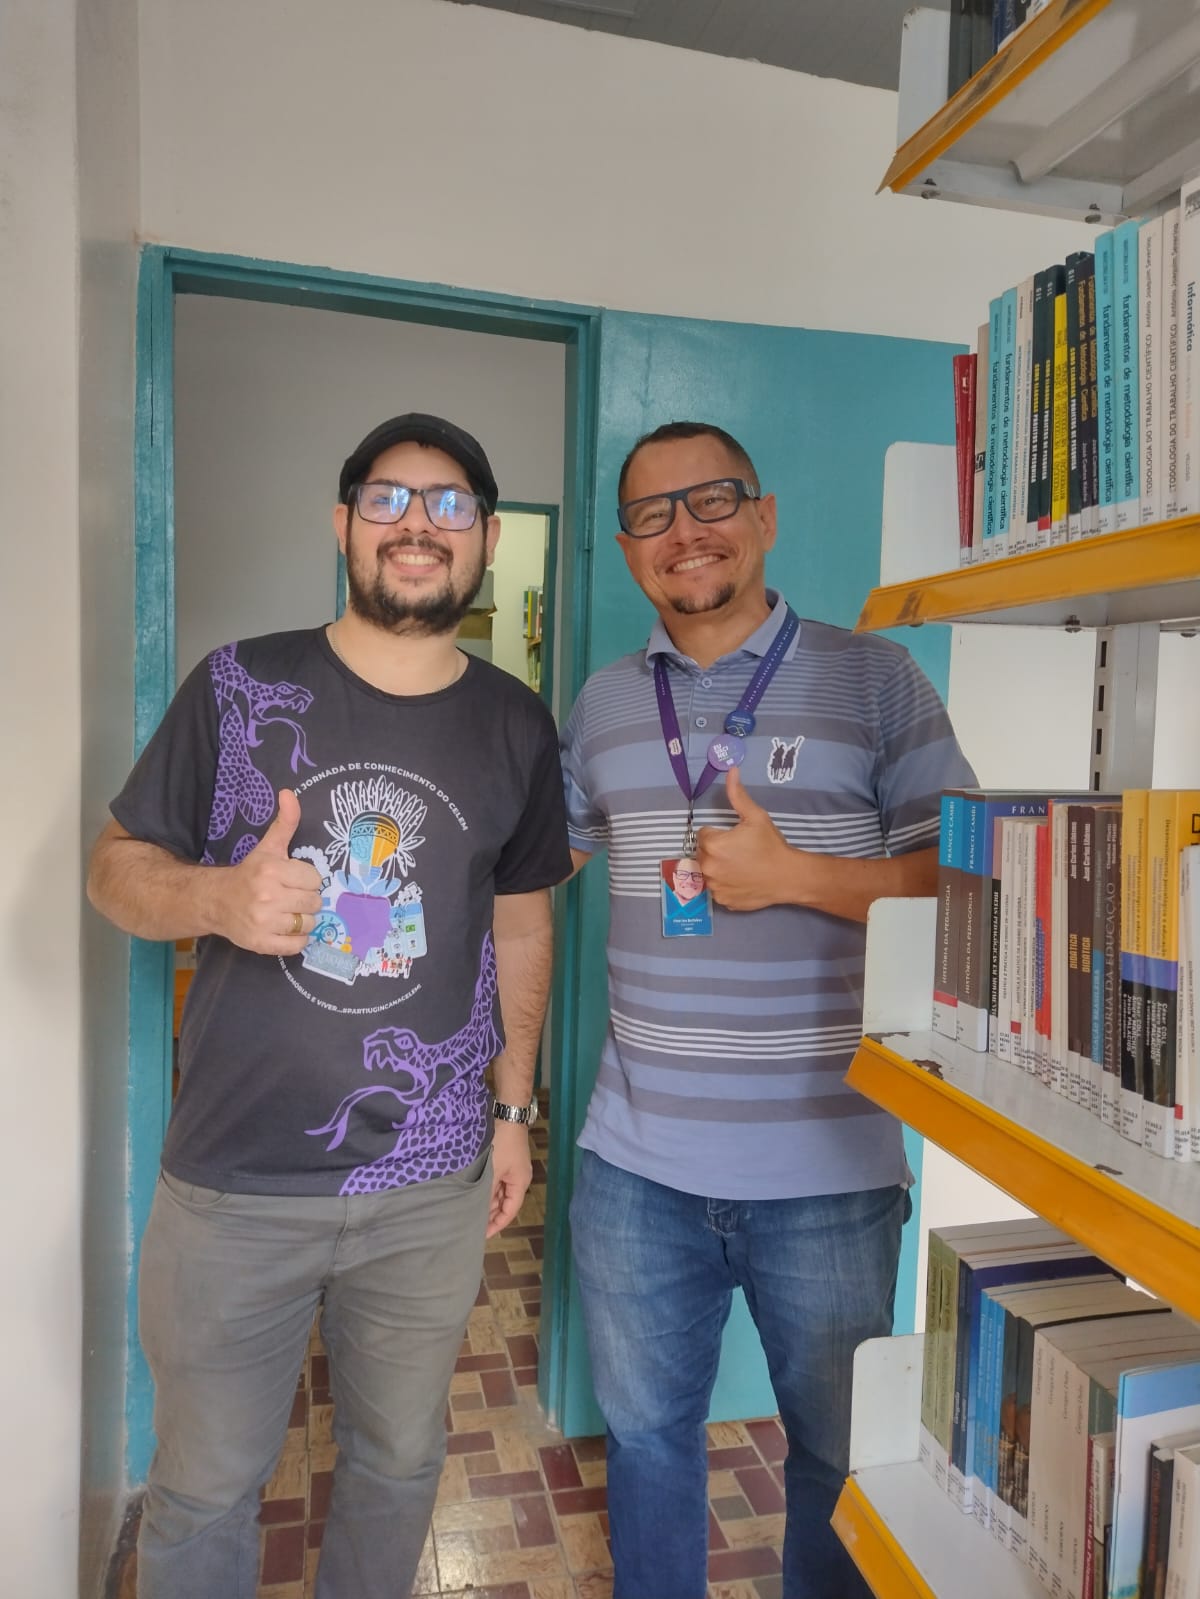 Ages doa mais de 2 mil livros a biblioteca pública de Tucano/BA 